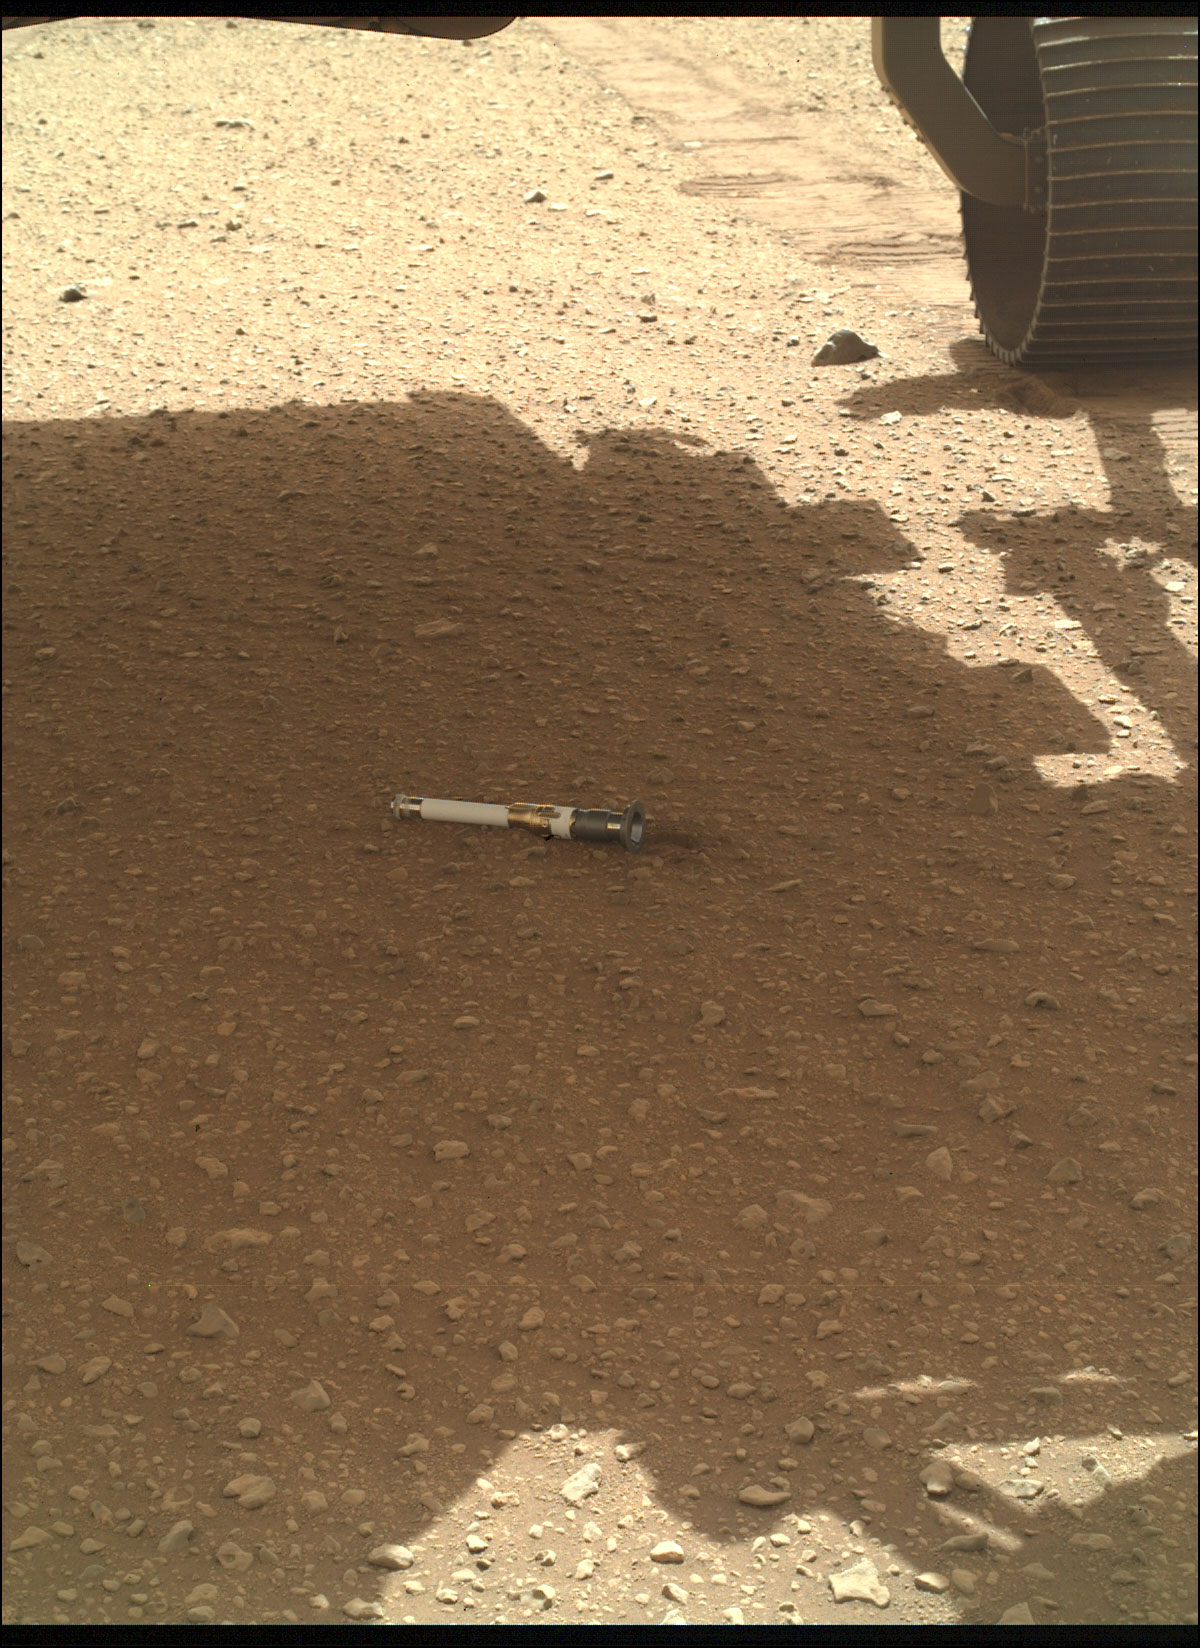 幻灯片 2 - 毅力号火星车在火星表面放置第一个样本